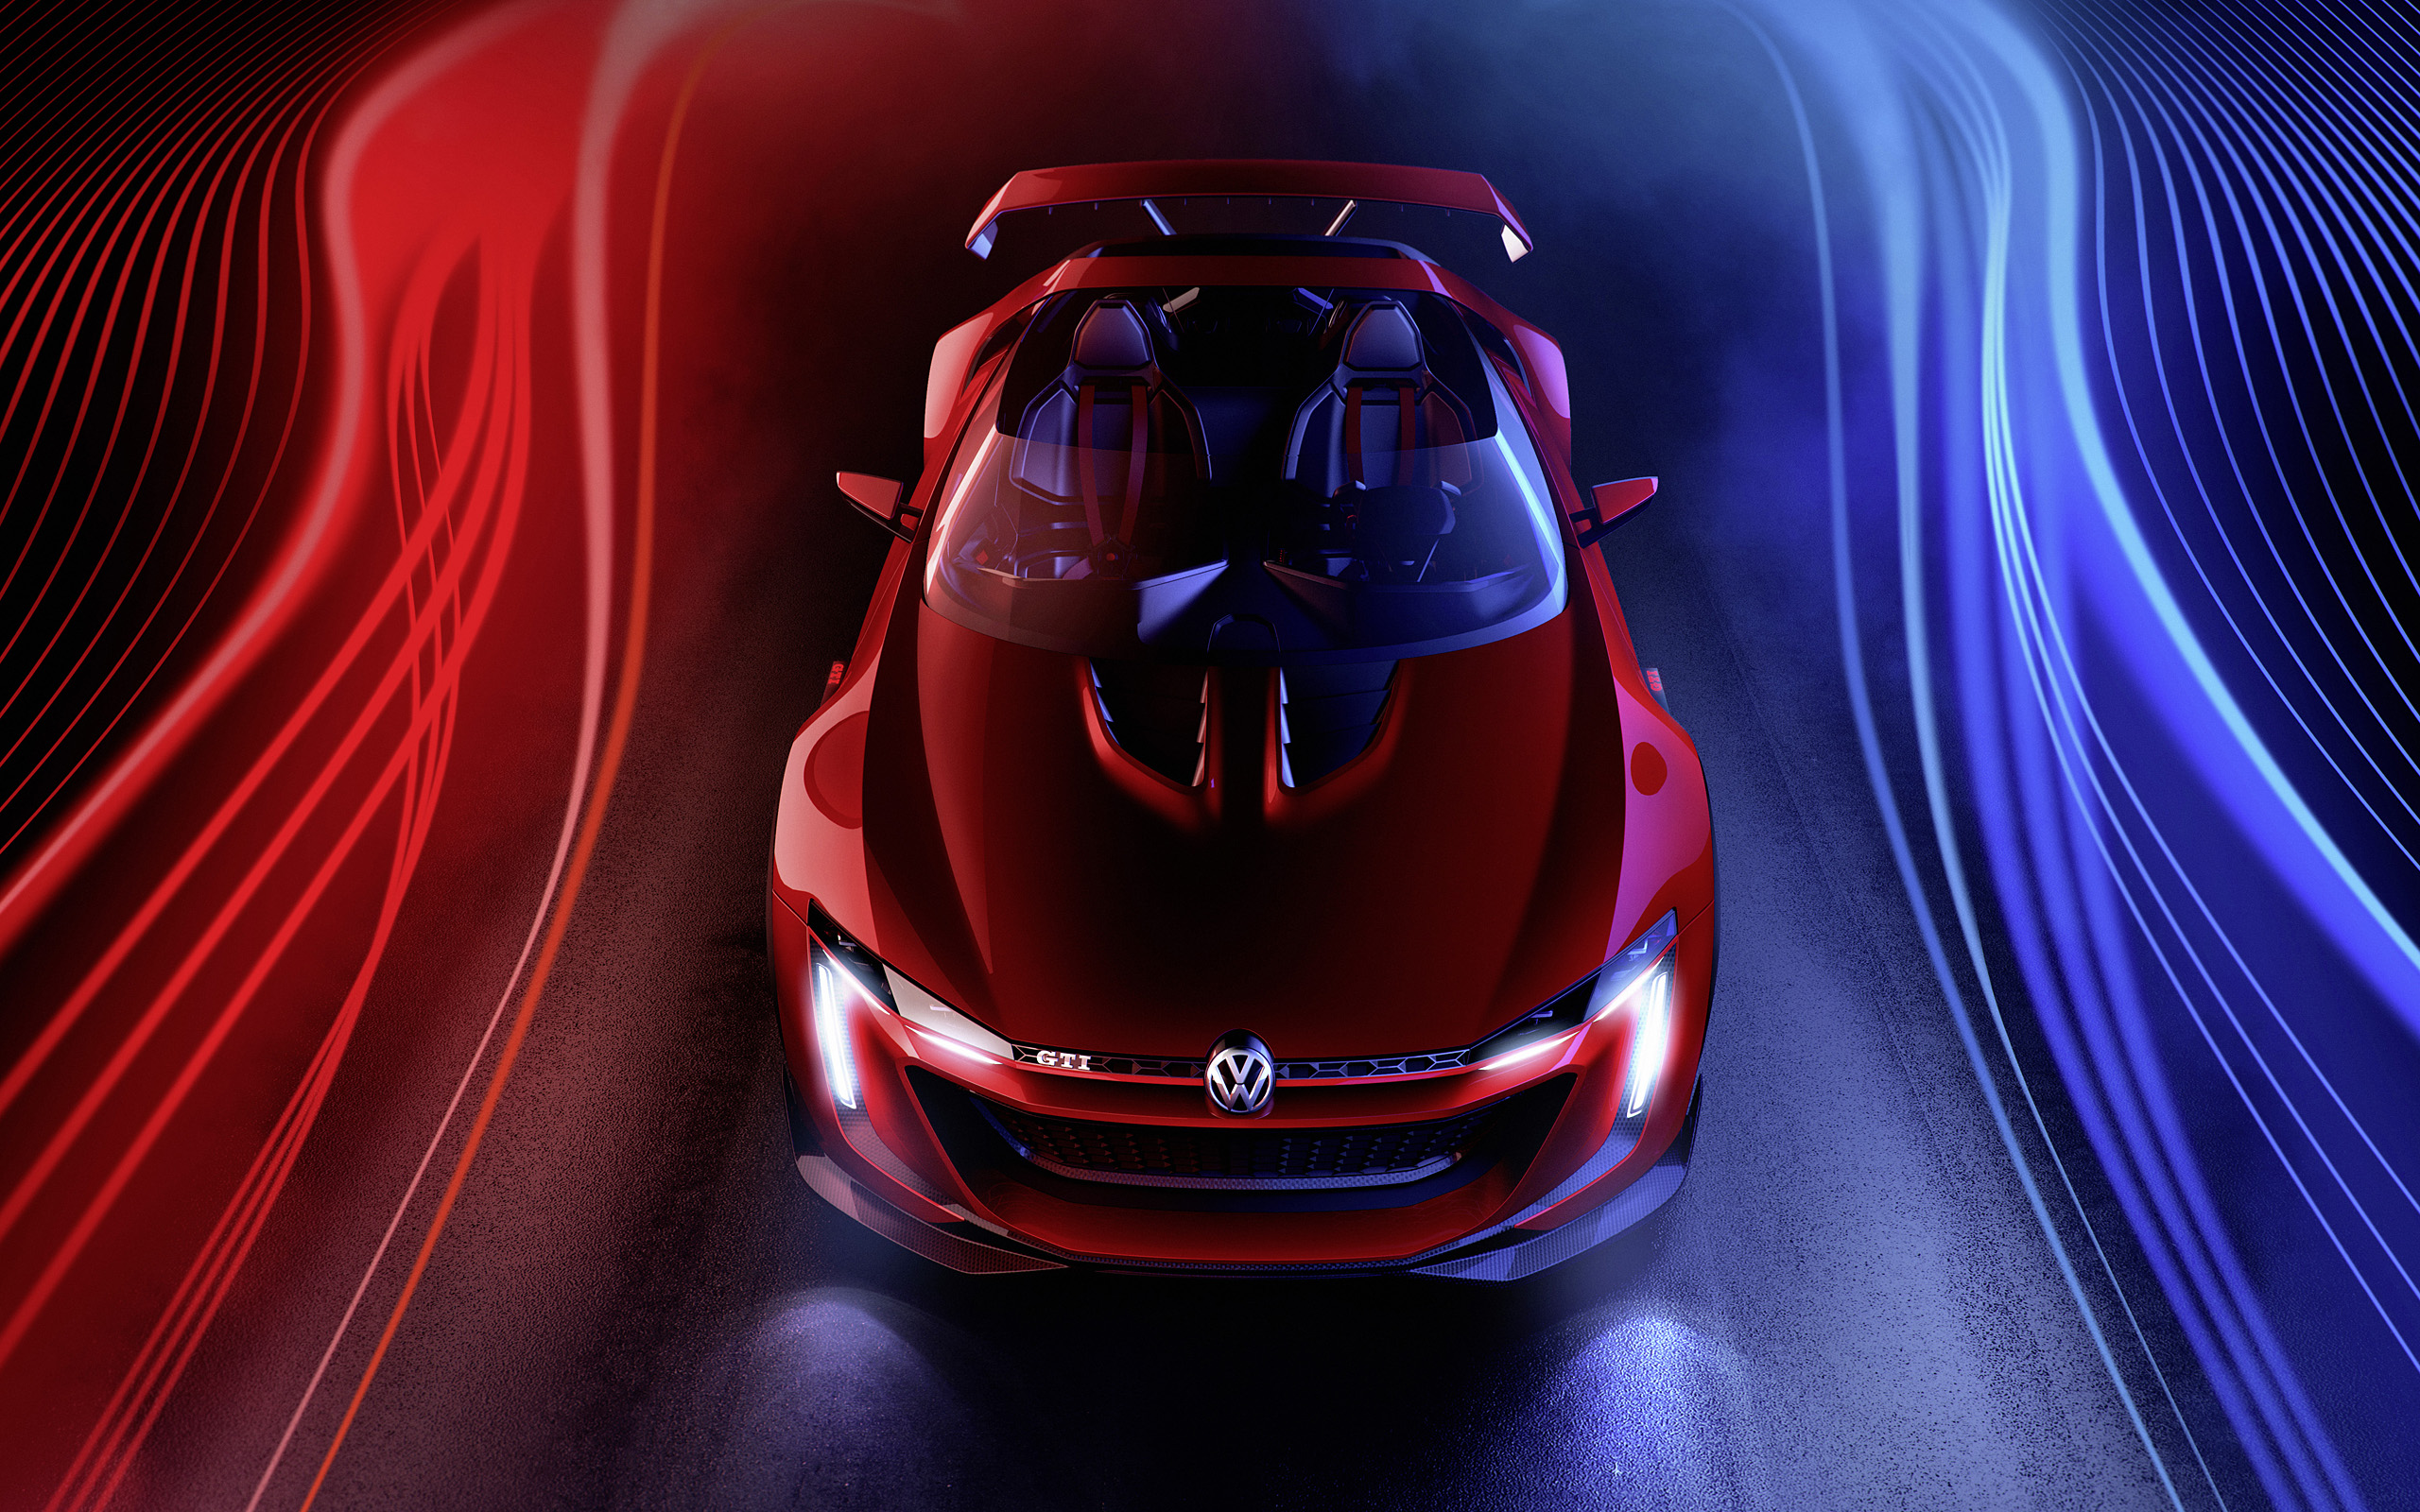  2014 Volkswagen GTI Roadster Concept Wallpaper.